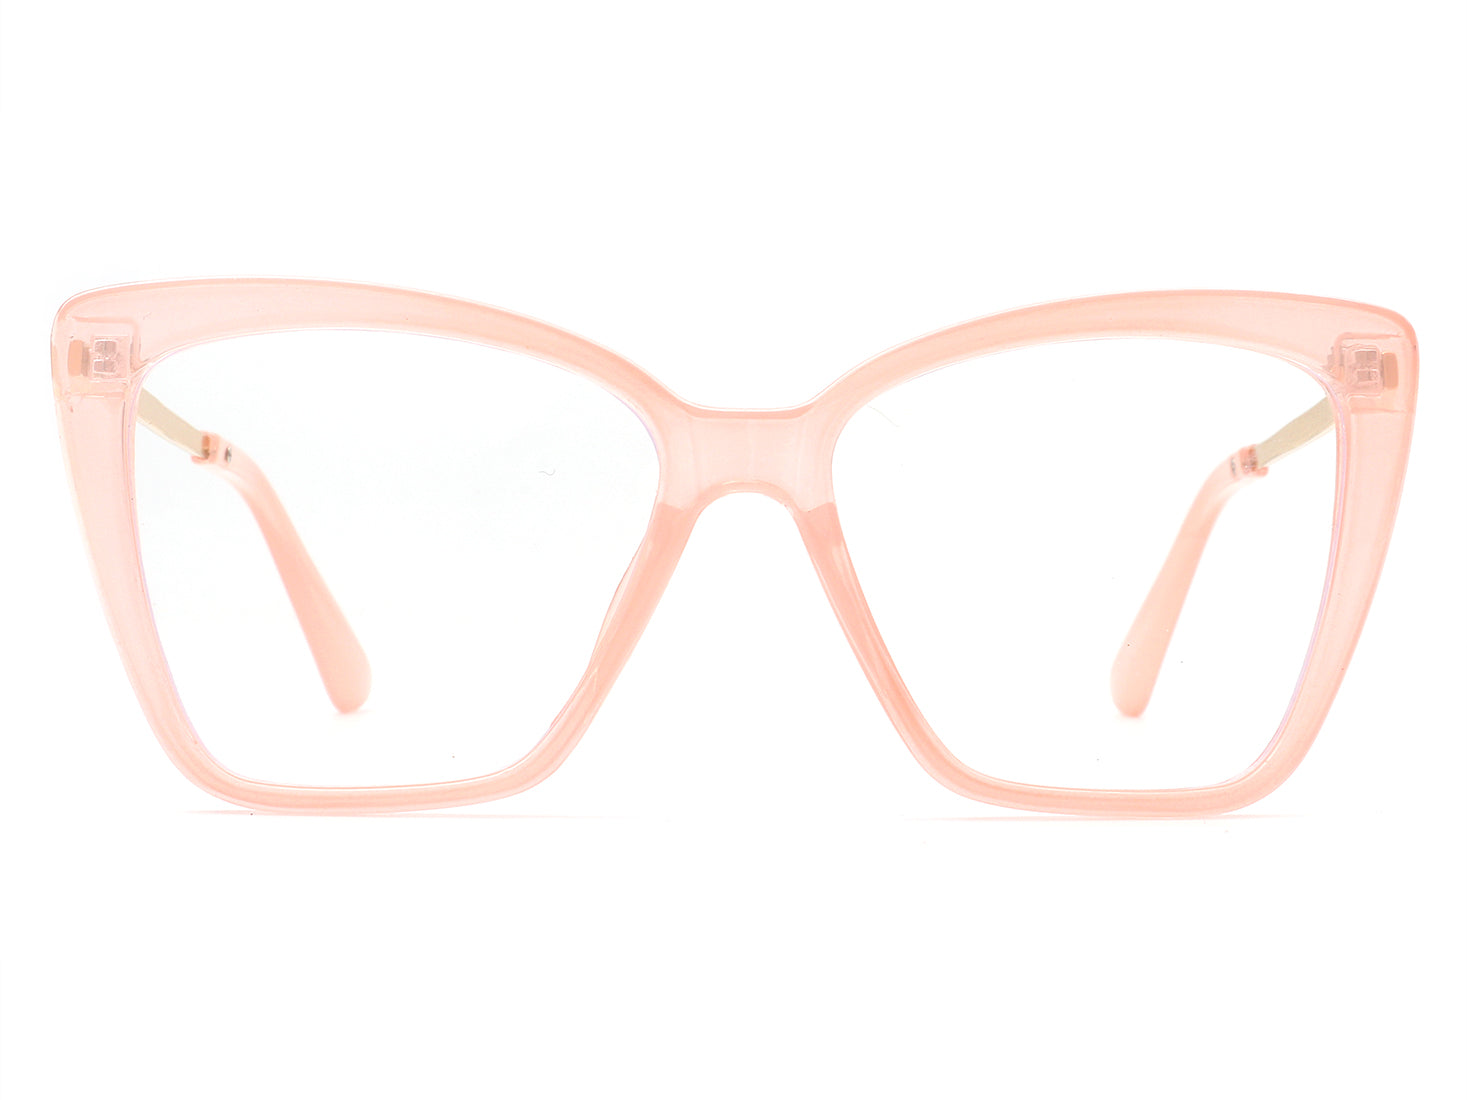 HBJ2011 -  Women Square High Pointed Cat Eye Blue Light Blocker Glasses